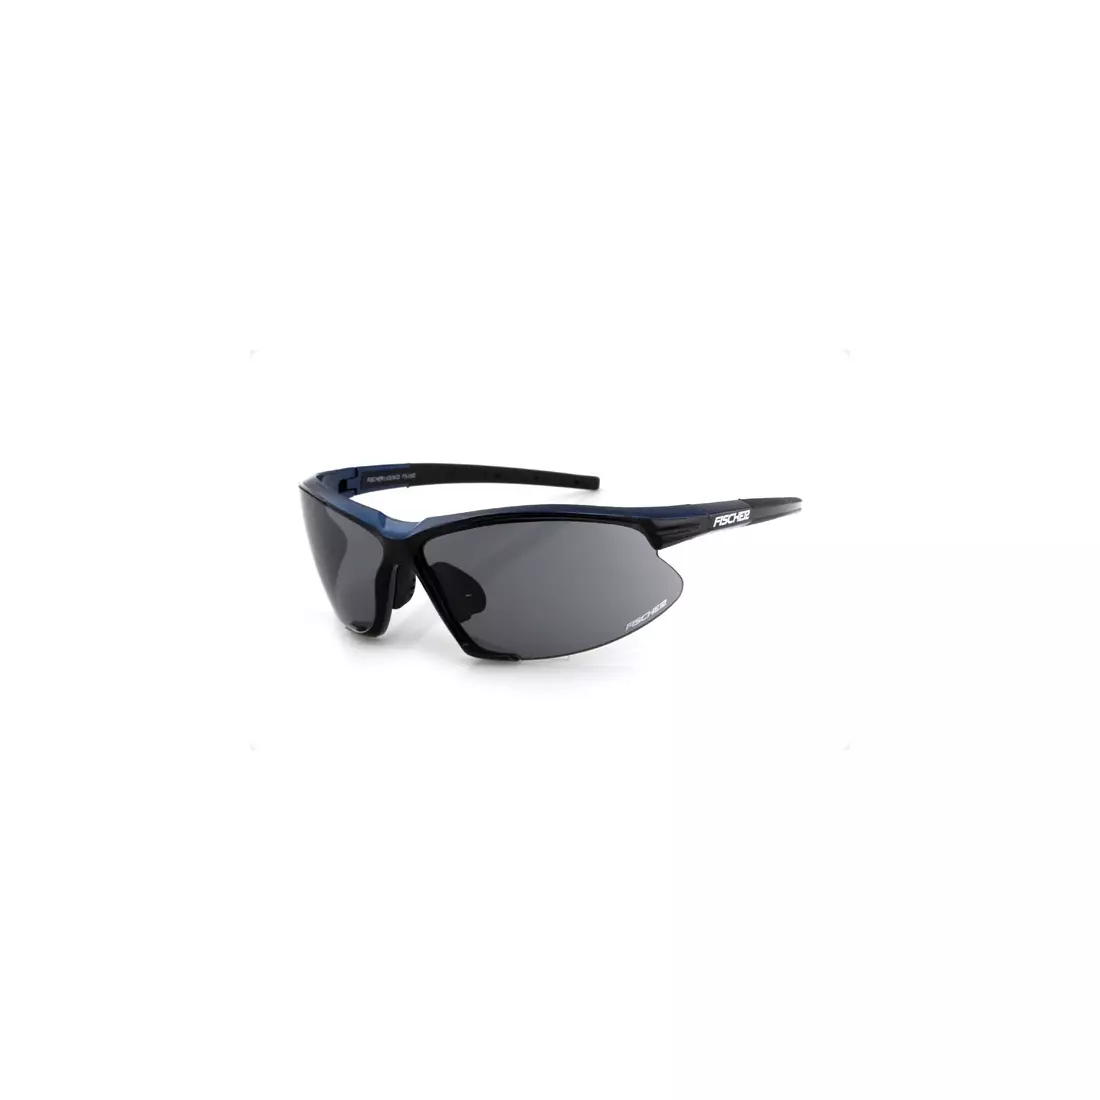 FISCHER - Sportbrille FS-05D - Farbe: Schwarz und Blau